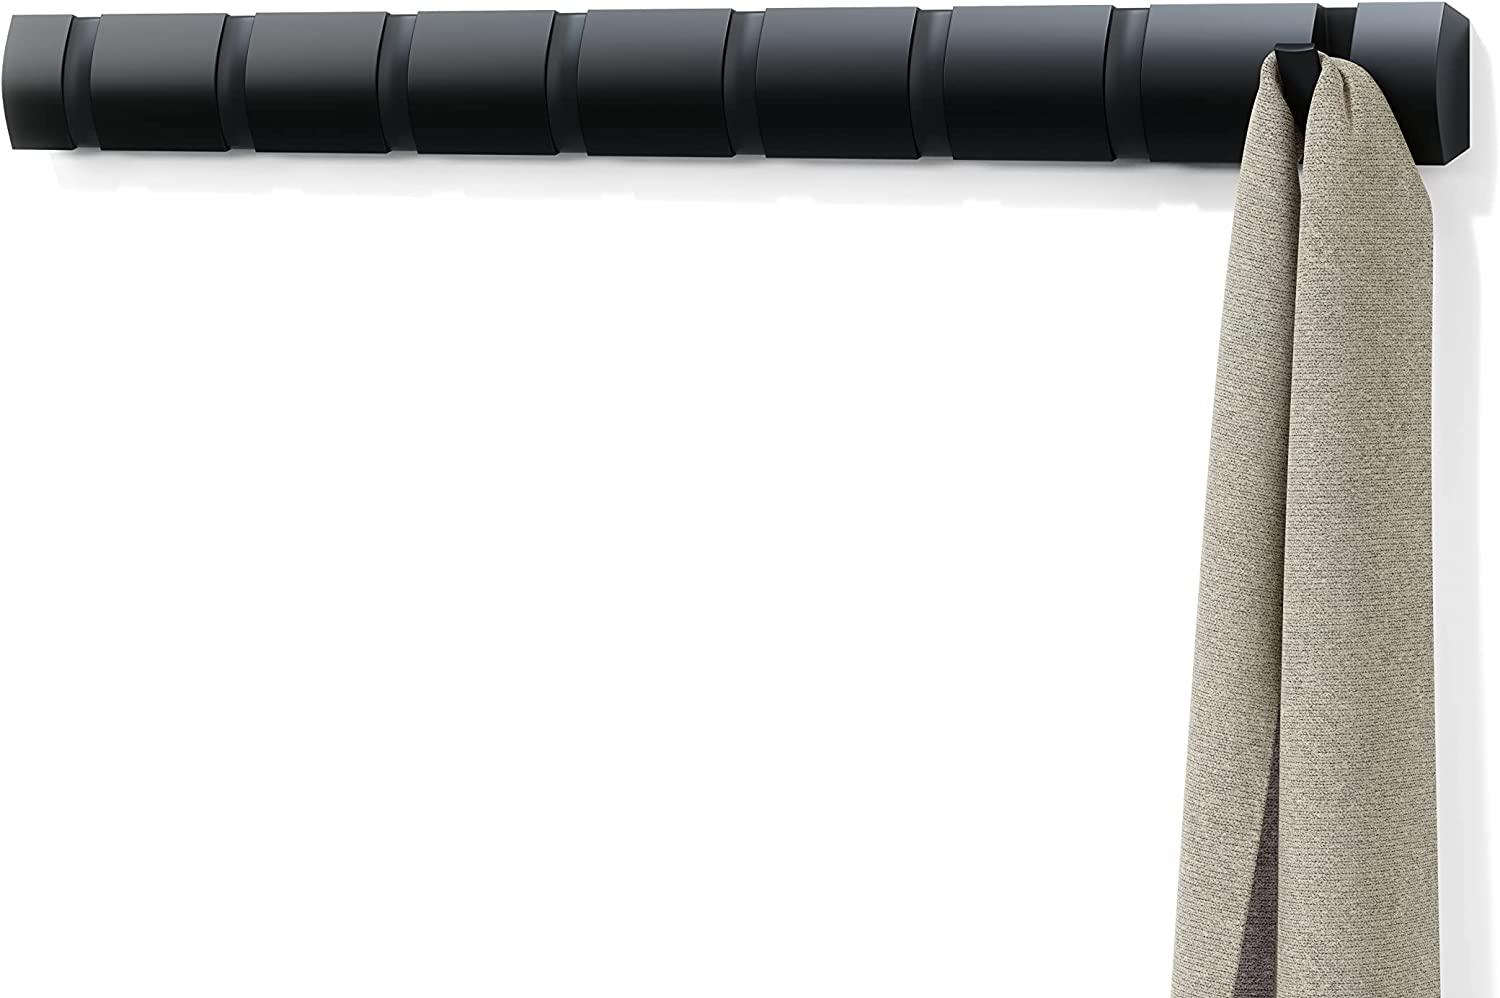 Umbra Flip 8 Garderobenhaken – Moderne, Schlichte und Platzsparende Garderobenleiste mit 8 Beweglichen Haken für Jacken, Mäntel, Schals, Handtaschen und Mehr, Schwarz Bild 1